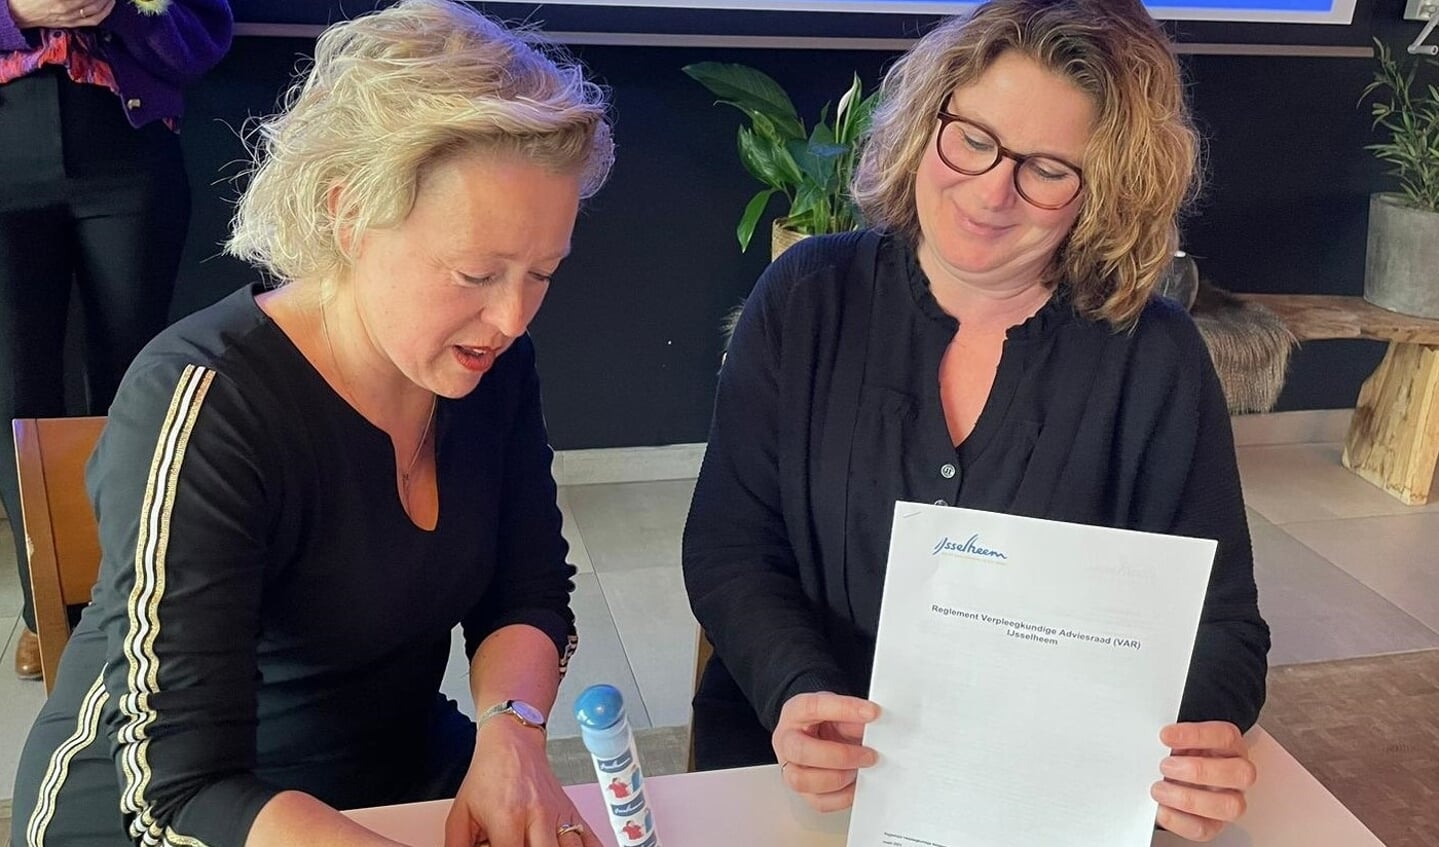 Karin Leferink, raad van bestuur IJsselheem (l) en Ivonne Huijsman, voorzitter van de verpleegkundige Adviesraad ondertekenen het formele reglement, waarmee de VAR een feit wordt.